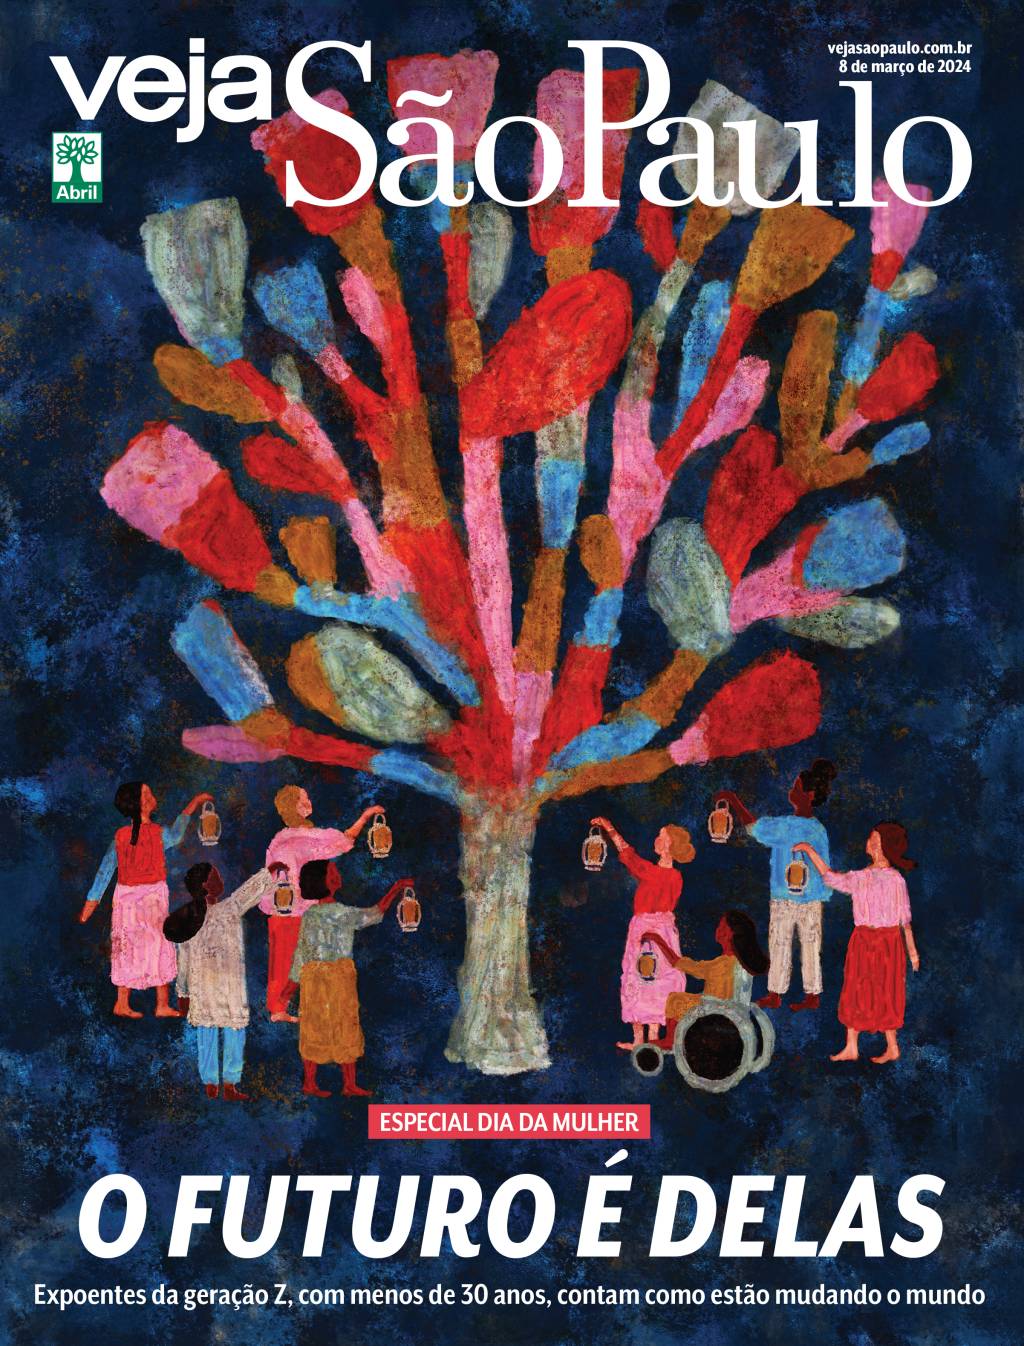 Imagem mostra ilustração com um árvore colorida ao meio e várias mulheres no entorno, segurando pequenas lamparinas